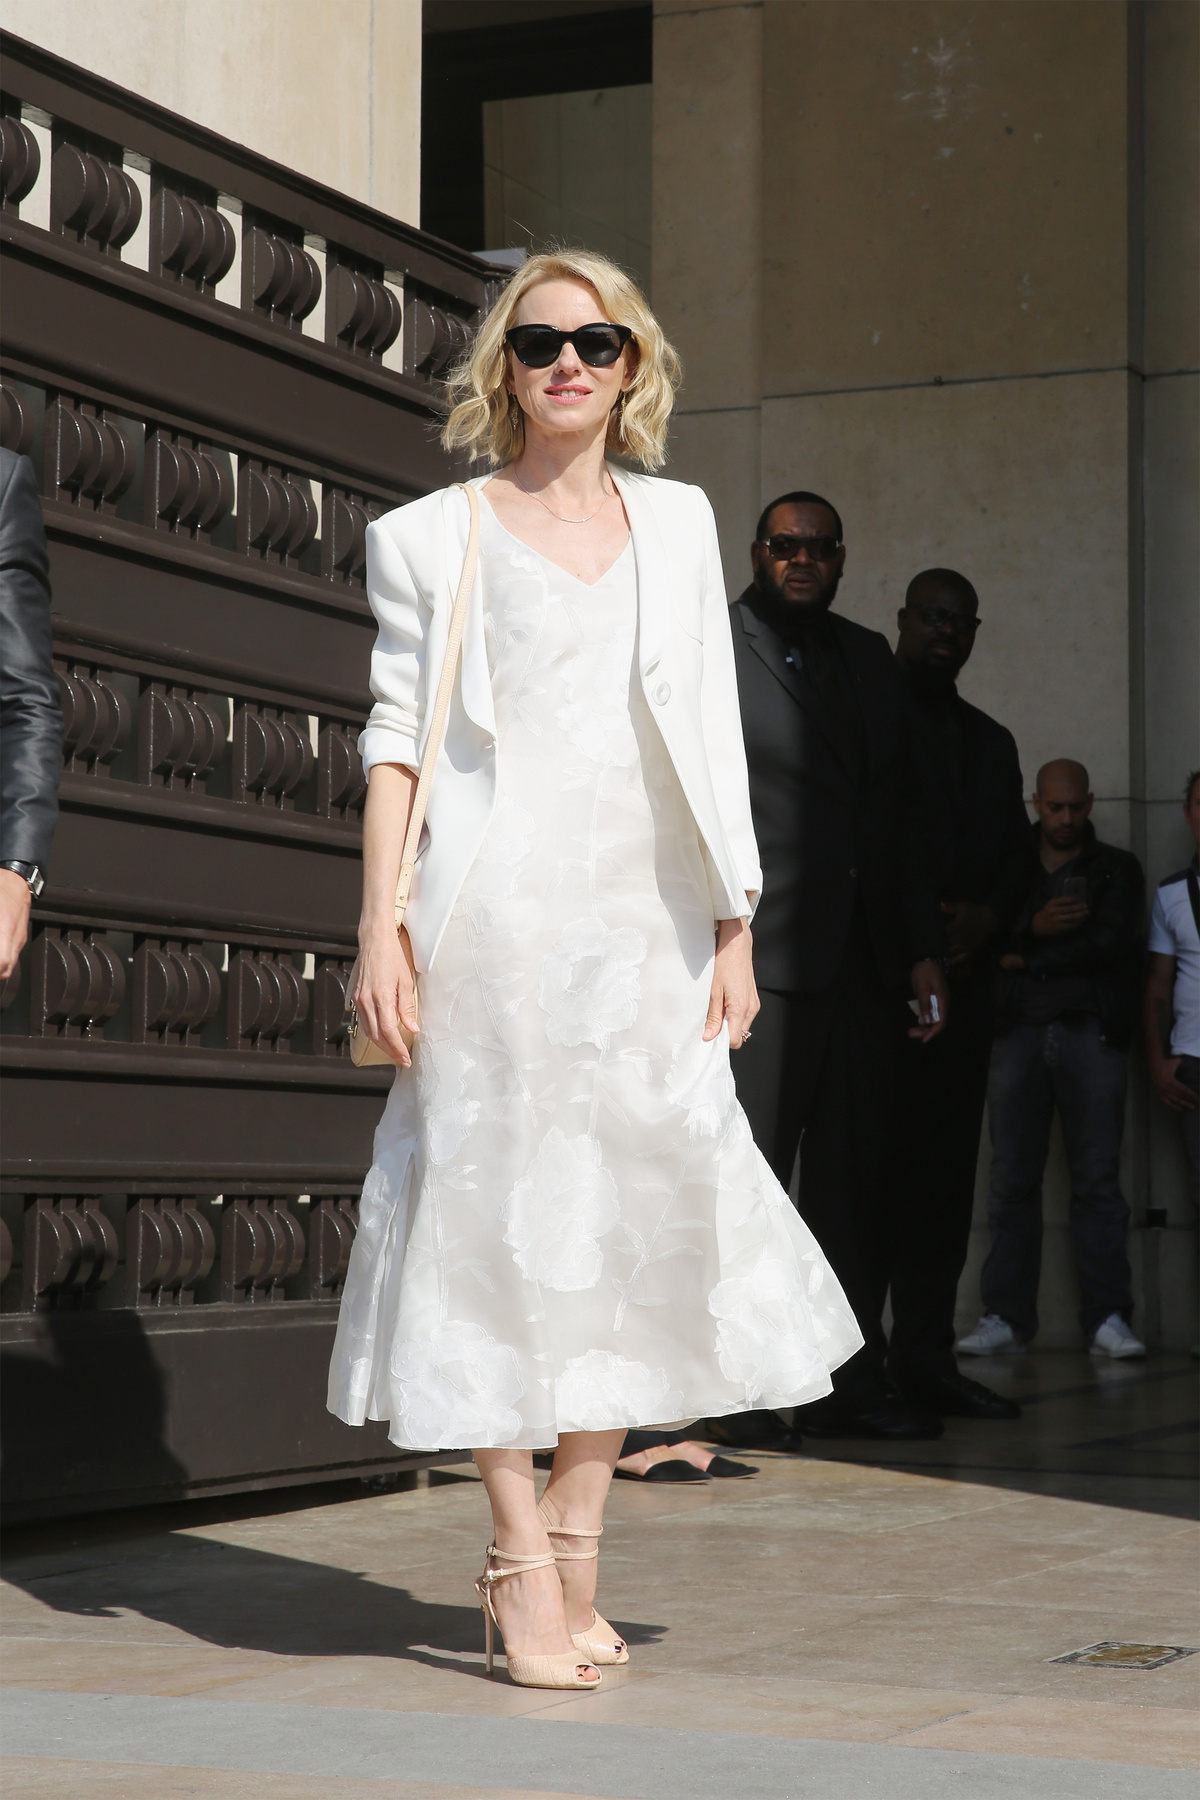 A 90-es évek stílusát idéző ujjatlan fehér ruha és lapos talpú szandál Elizabeth von Guttmanon.